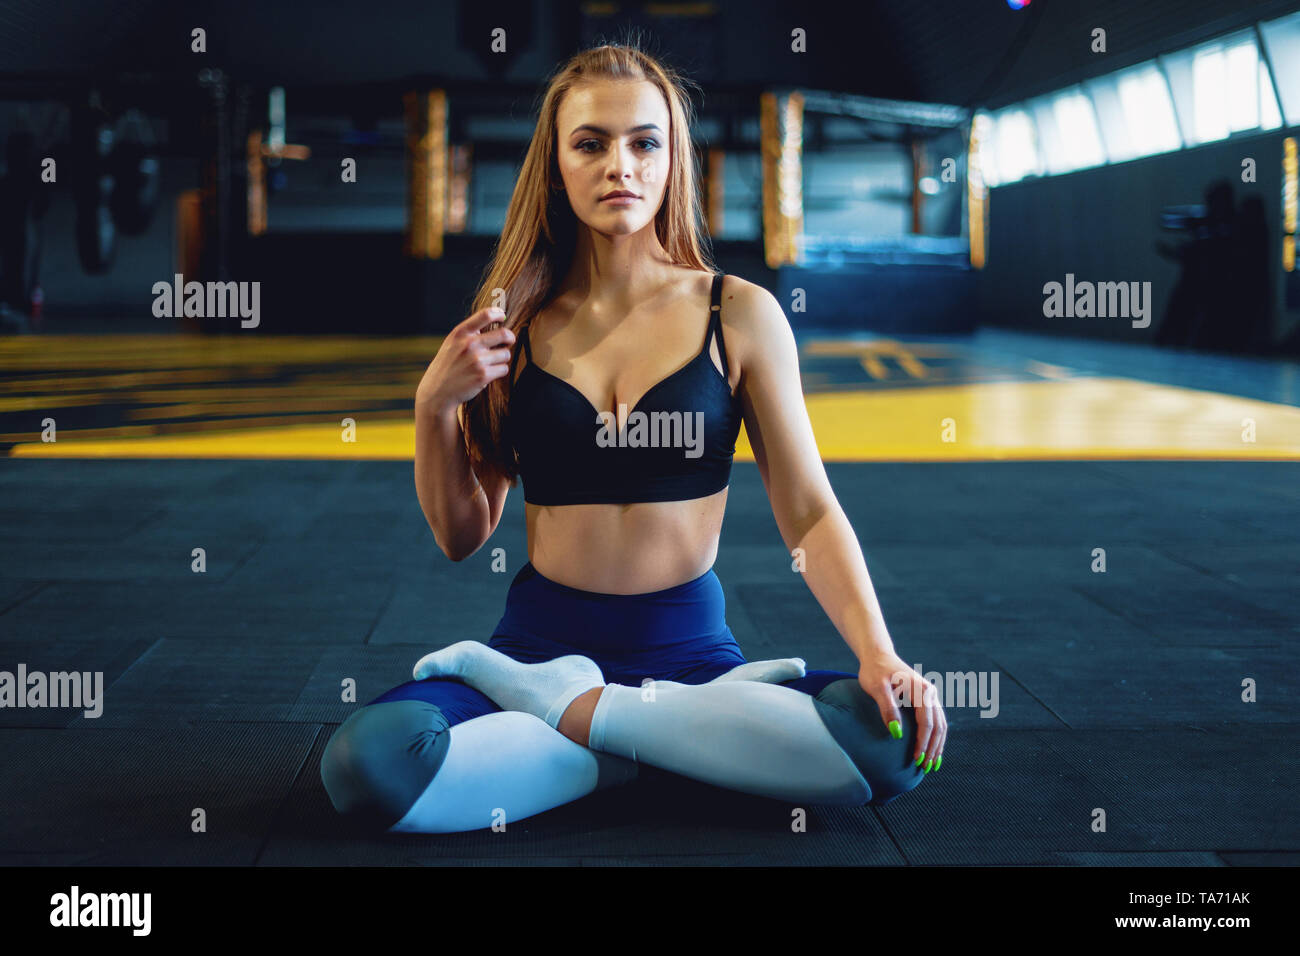 Fotografia do Stock: Sexy blond woman perfect body shape gymnast